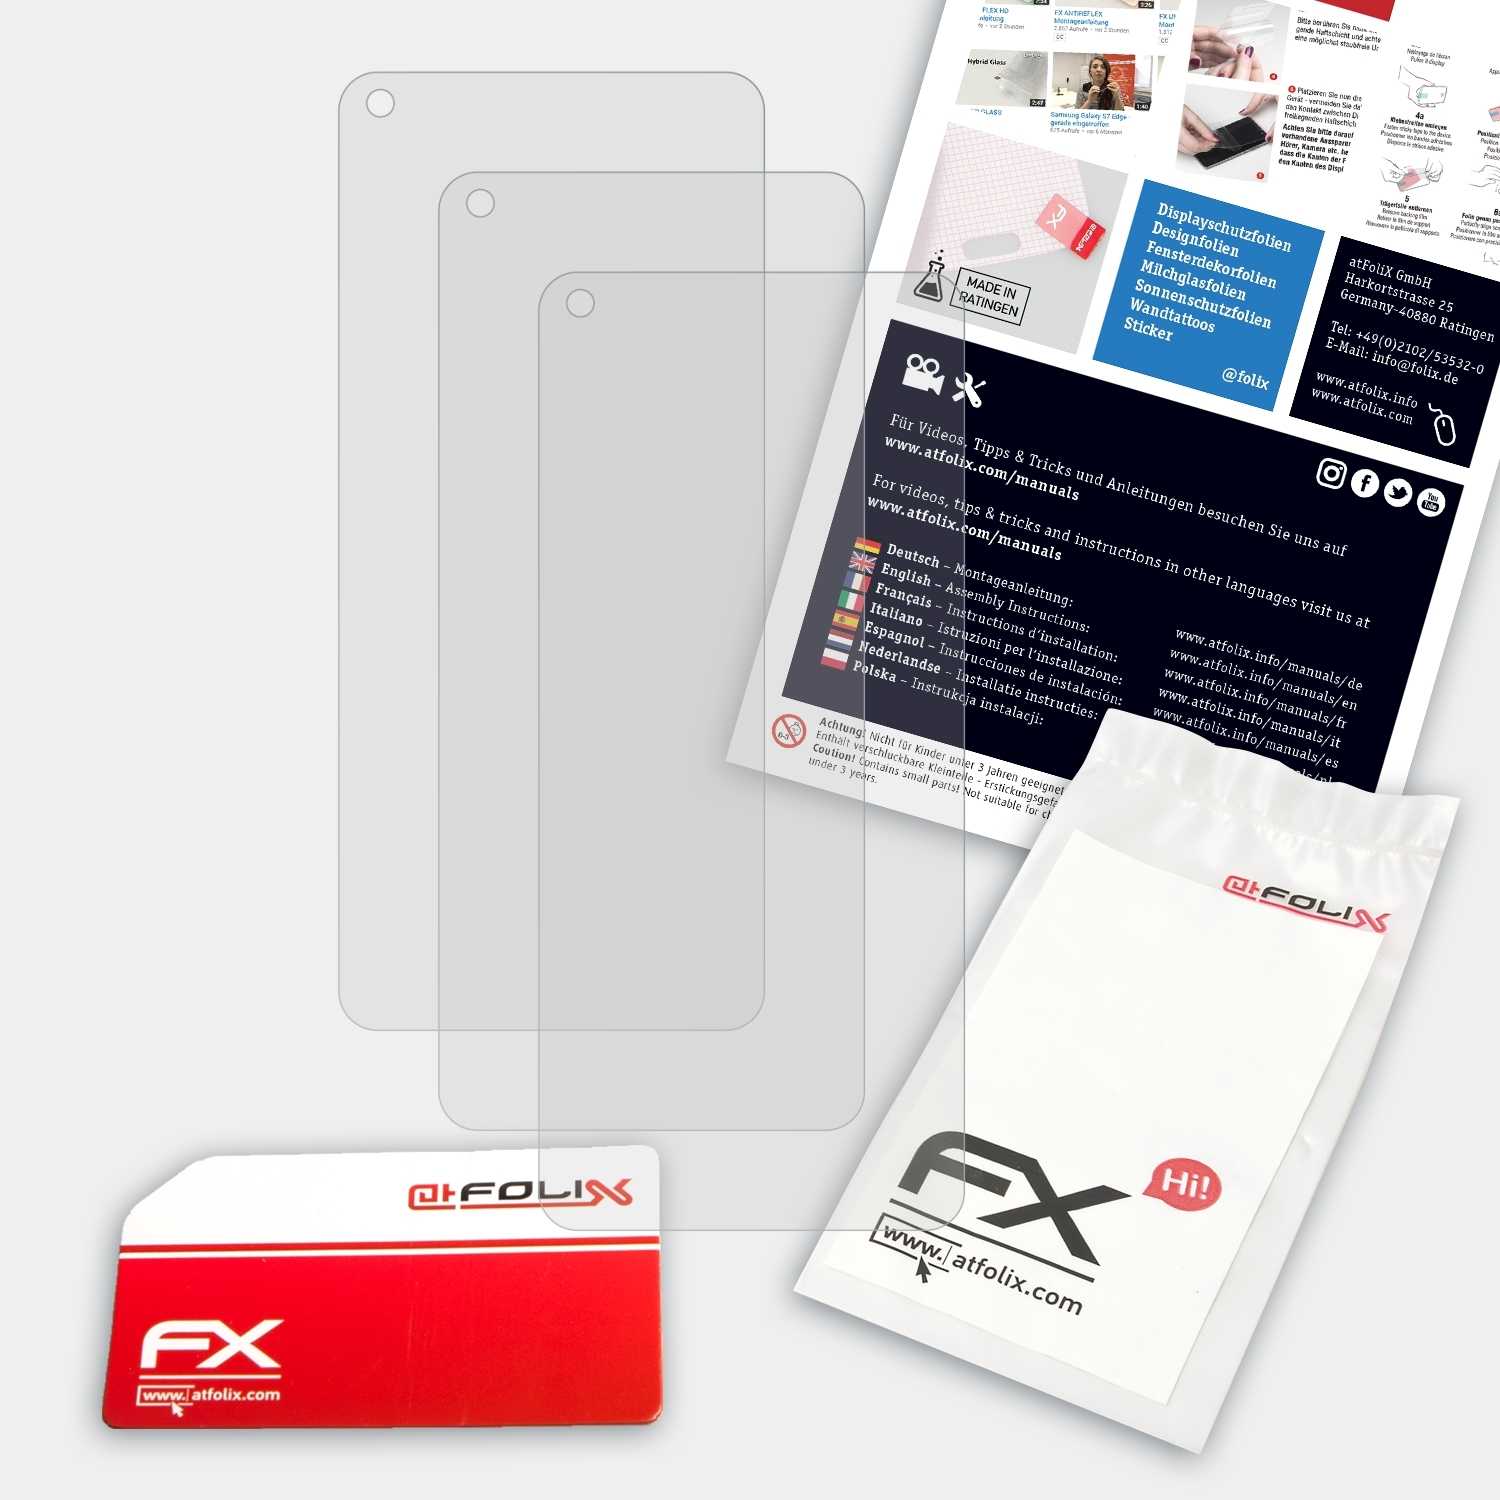 ATFOLIX 3x FX-Antireflex Displayschutz(für Q3 Pro) Realme